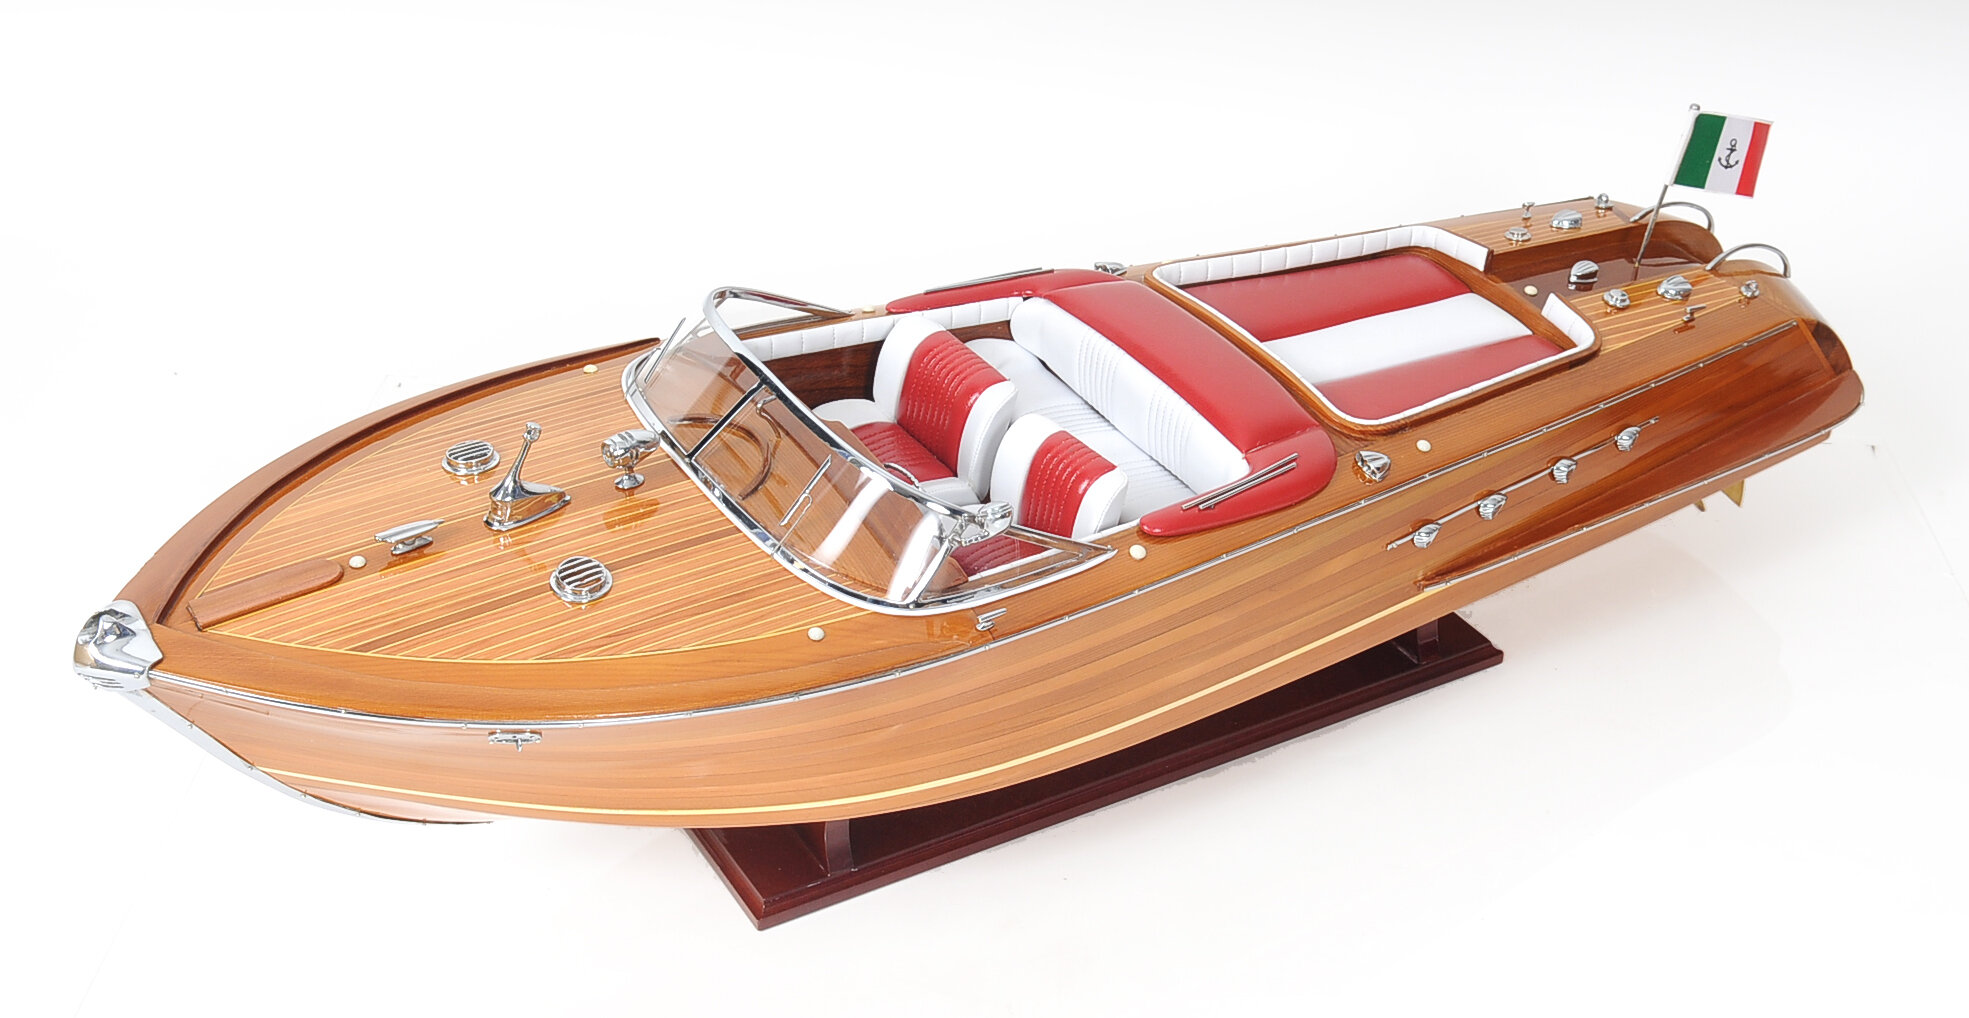 Riva Aquarama 20" Wood Model Boat L50 Quality Home Decor Lot Of 2 Models 